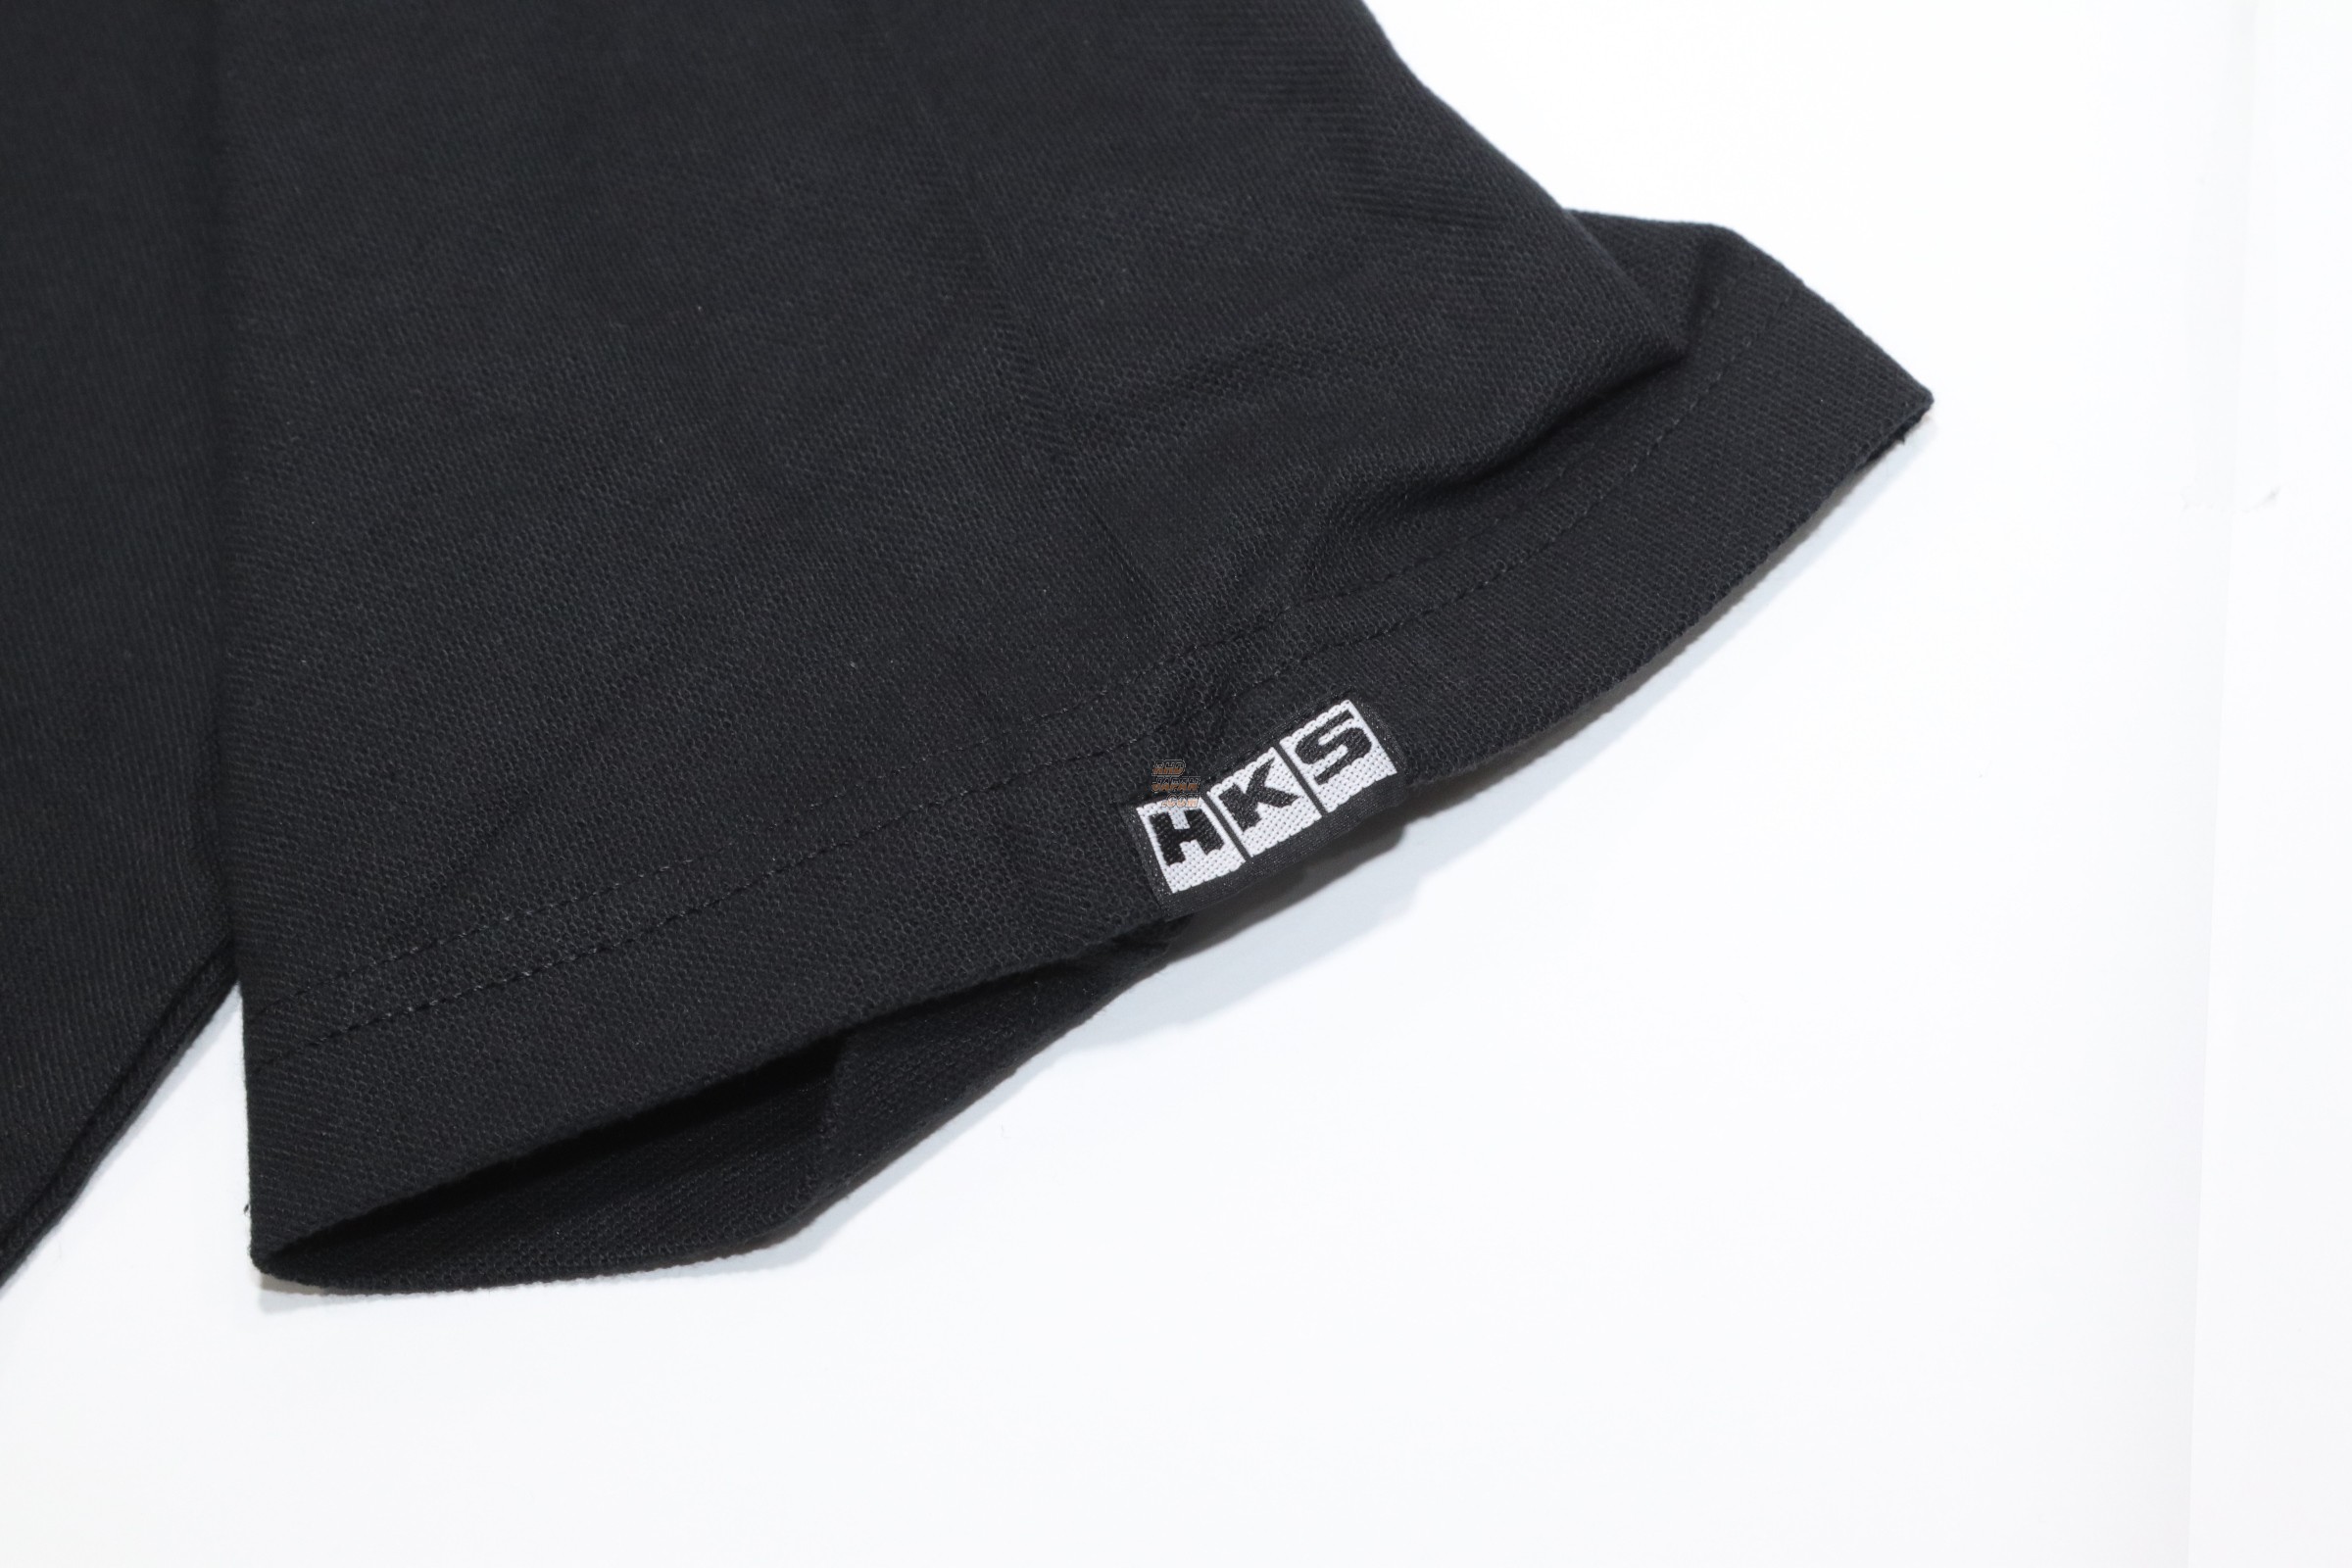 HKS Polo Shirt Tuned by HKS - Black XL - RHDJapan